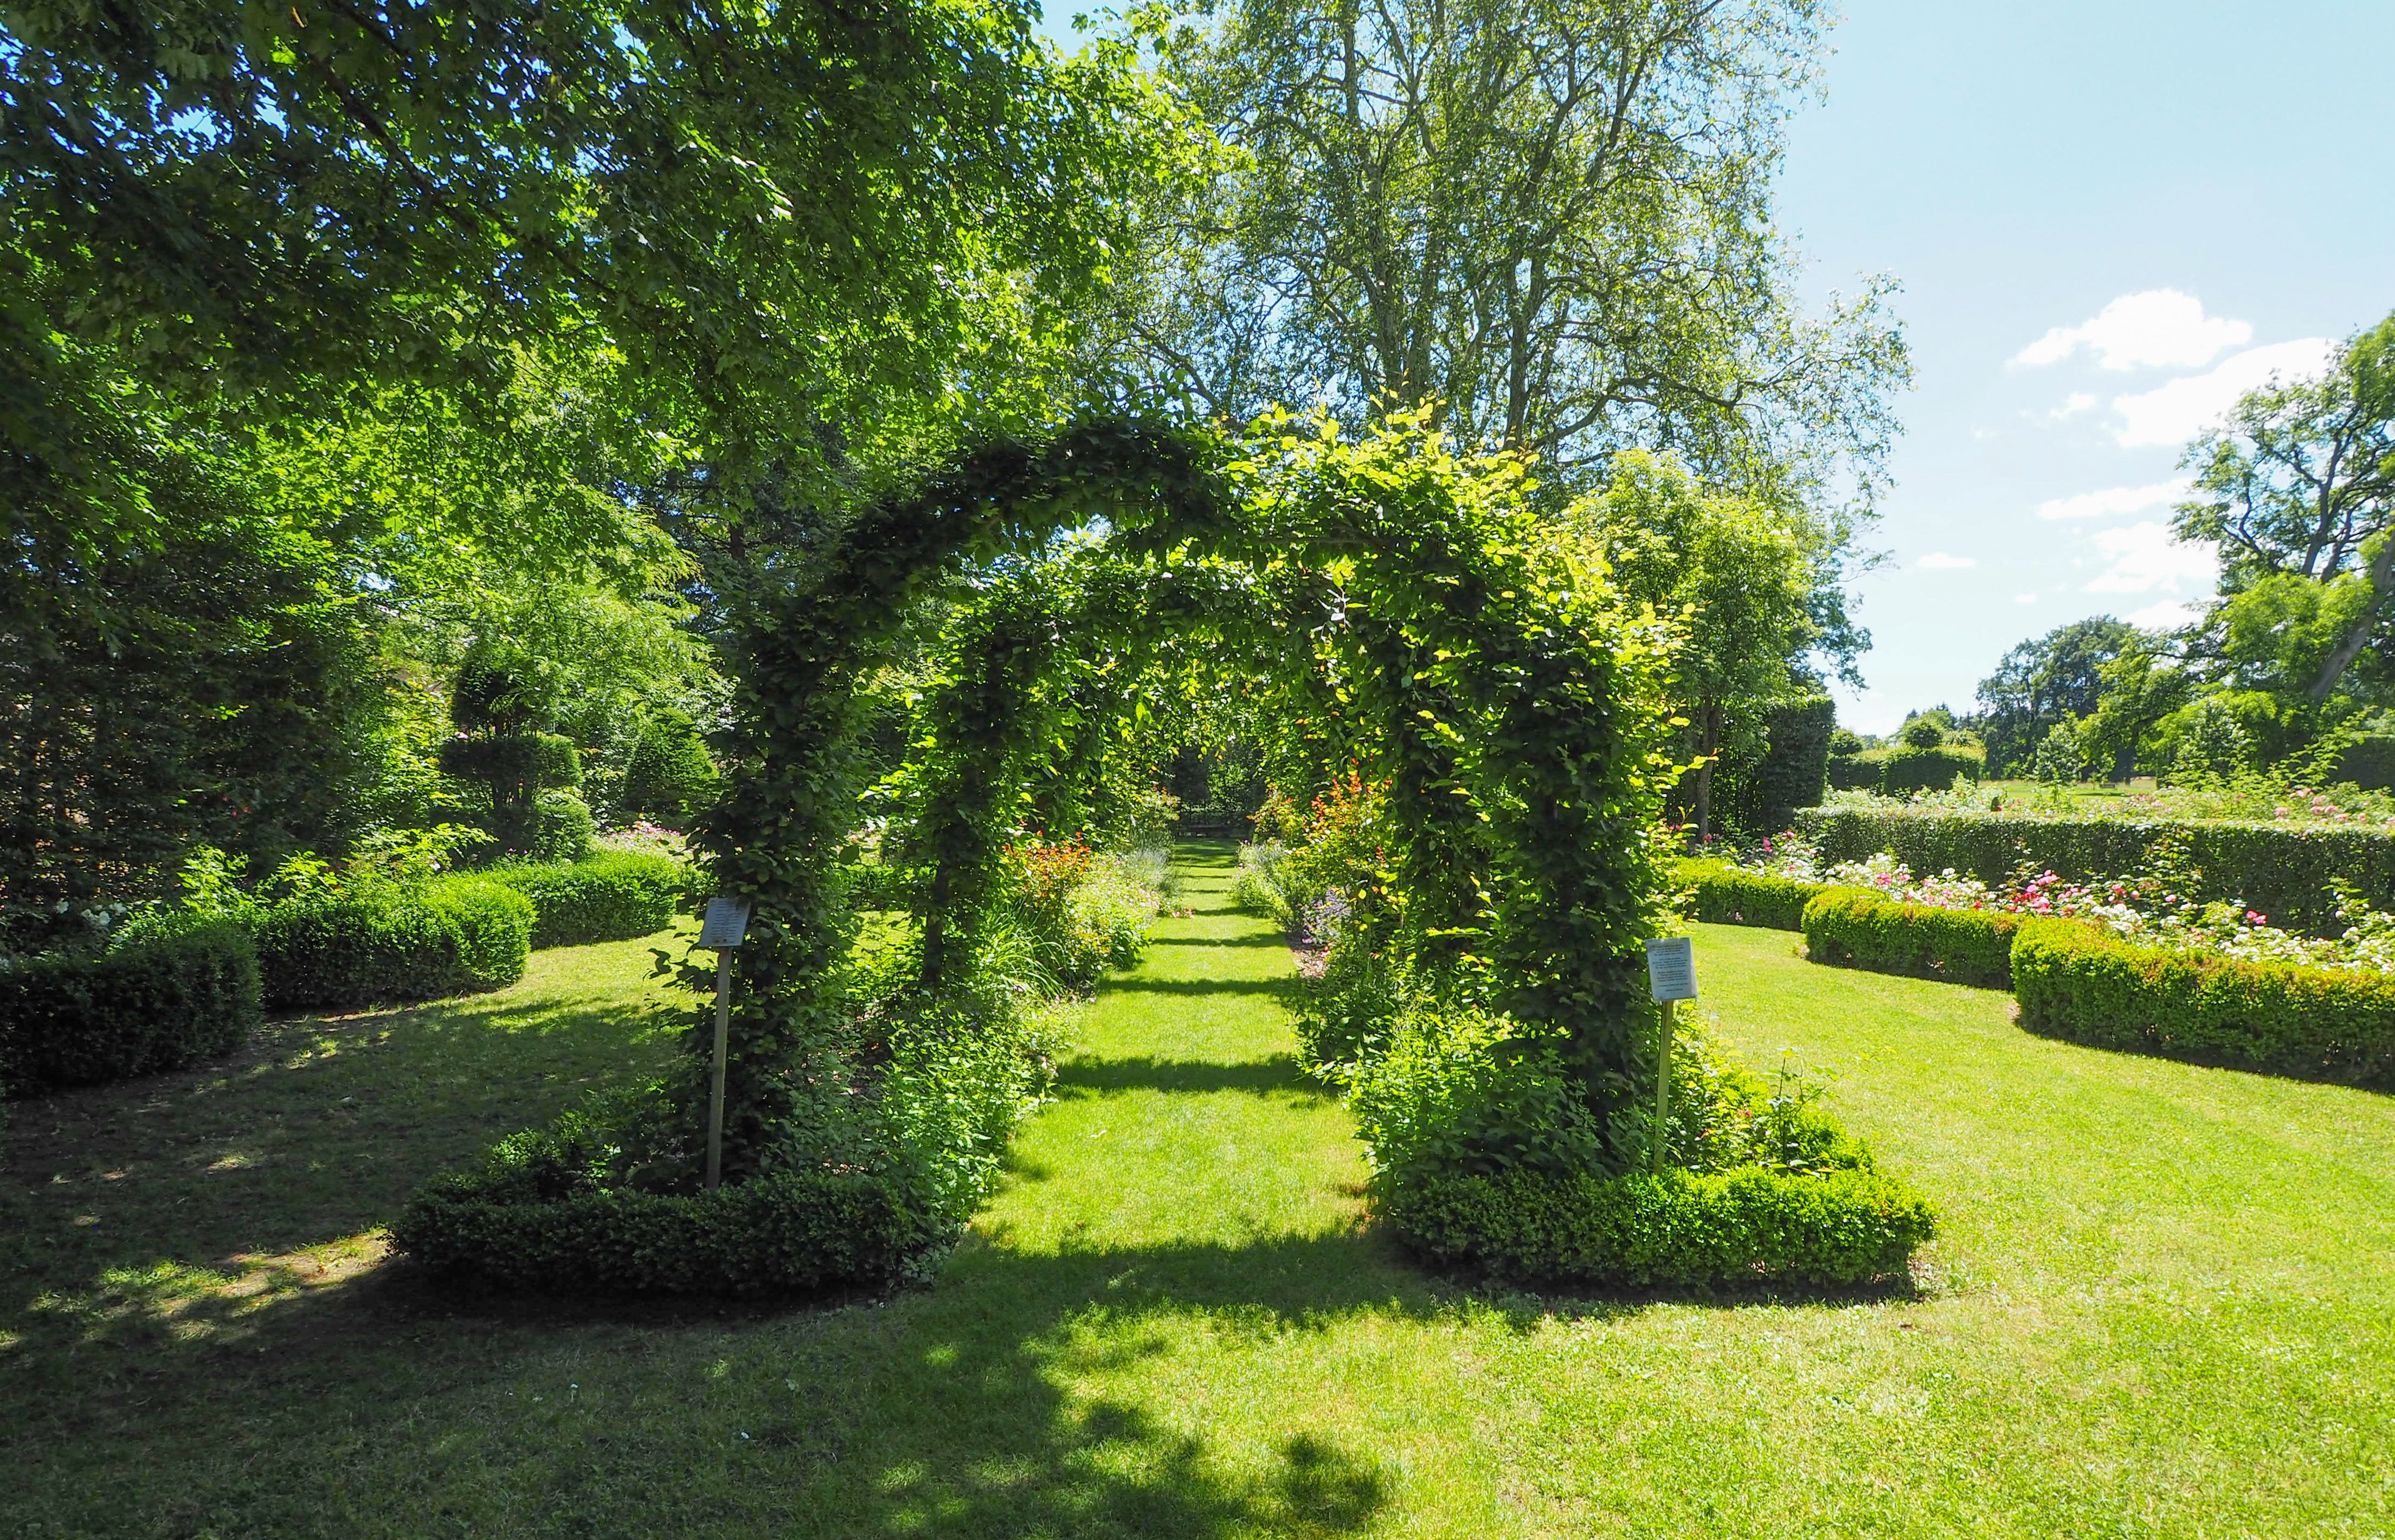 Ainay-le-vieil - Jardins secrets du cher - © ADTT18 - N. Buccanfuso